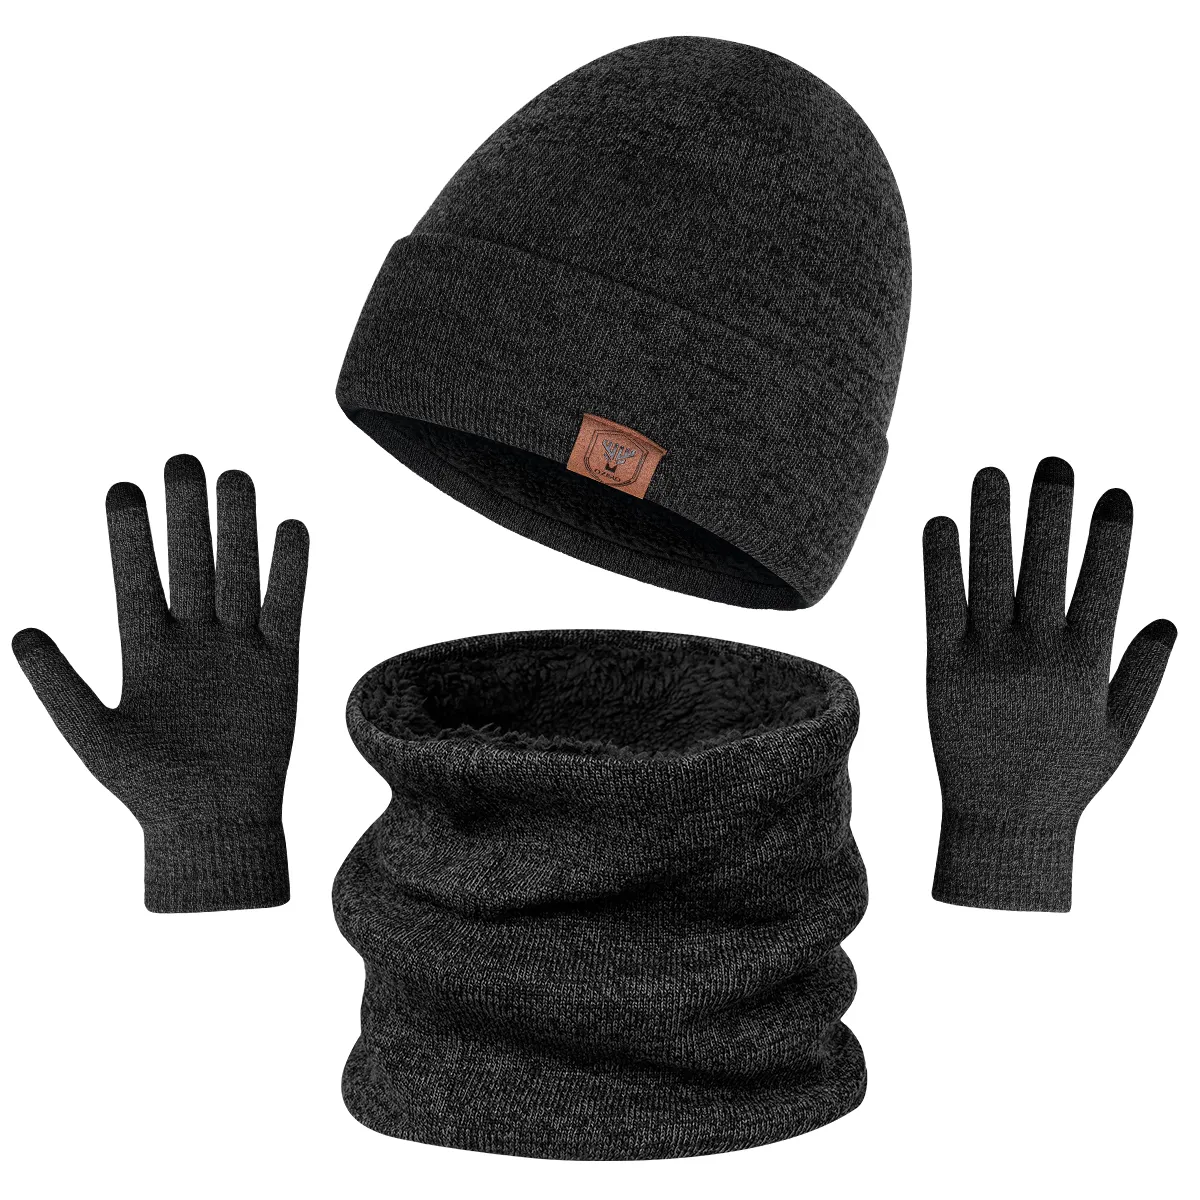 오제로 도매 따뜻한 겨울 두꺼운 니트 비니와 스카프 뜨개질 모자와 장갑 세트